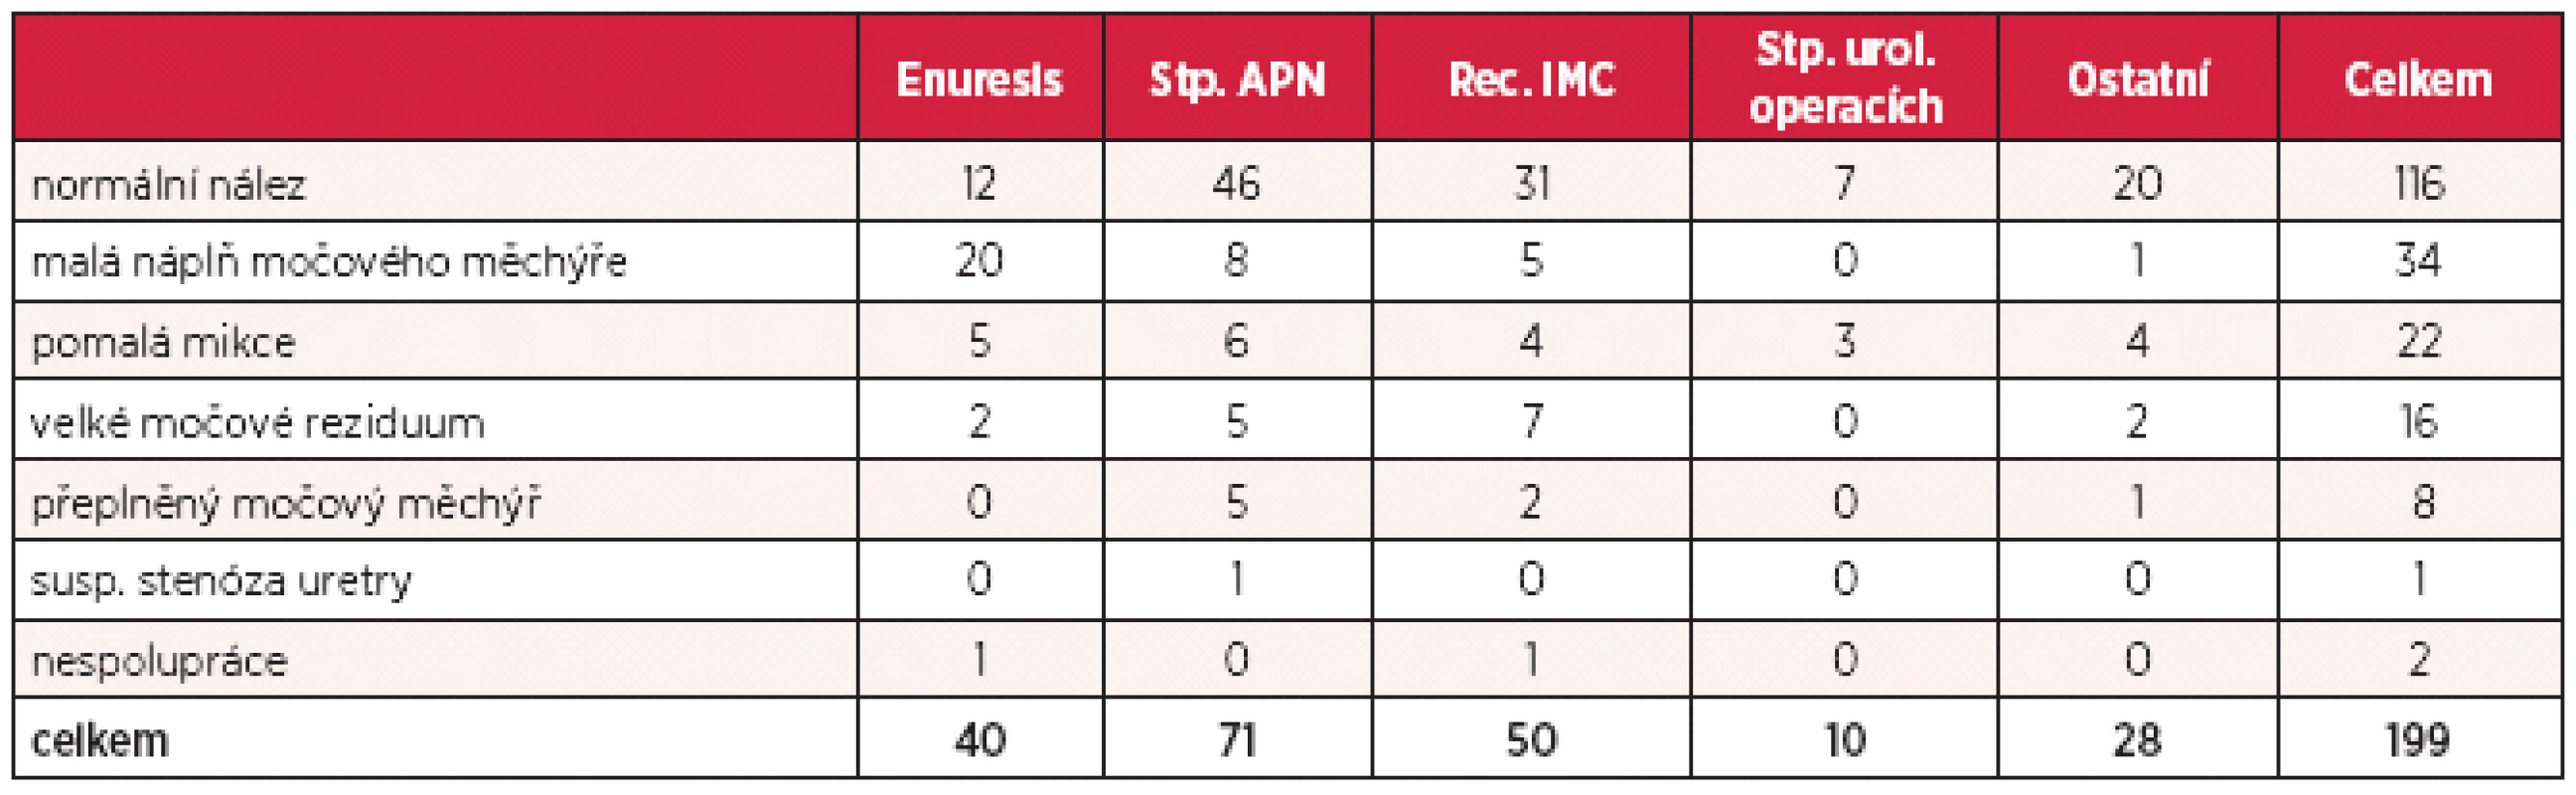 Závěr hodnocení NR UFM v souboru pacientů rozdělených do skupin podle diagnóz